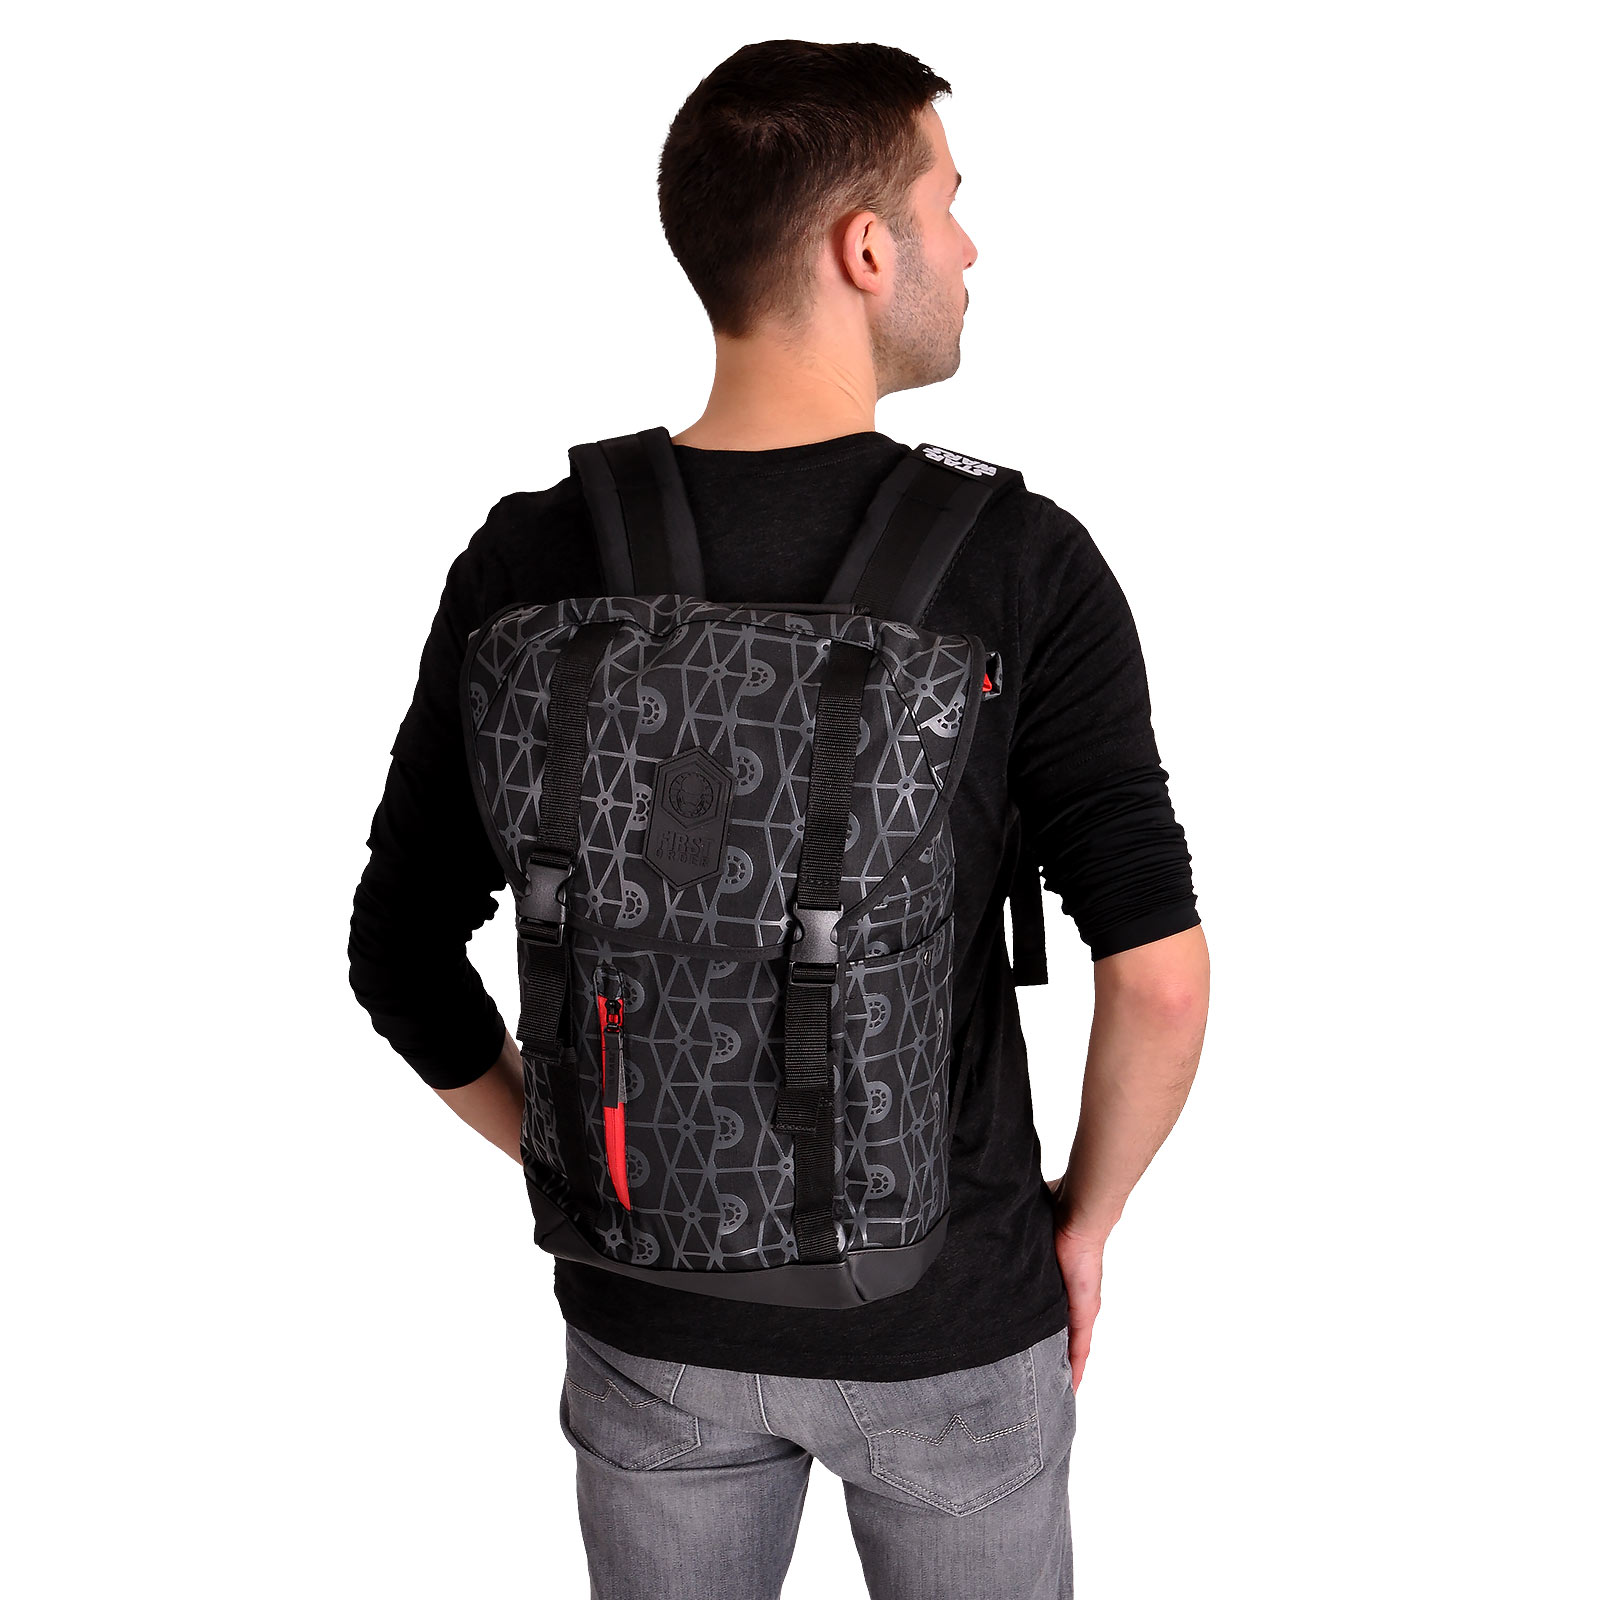 Star Wars - First Order Backpack Black